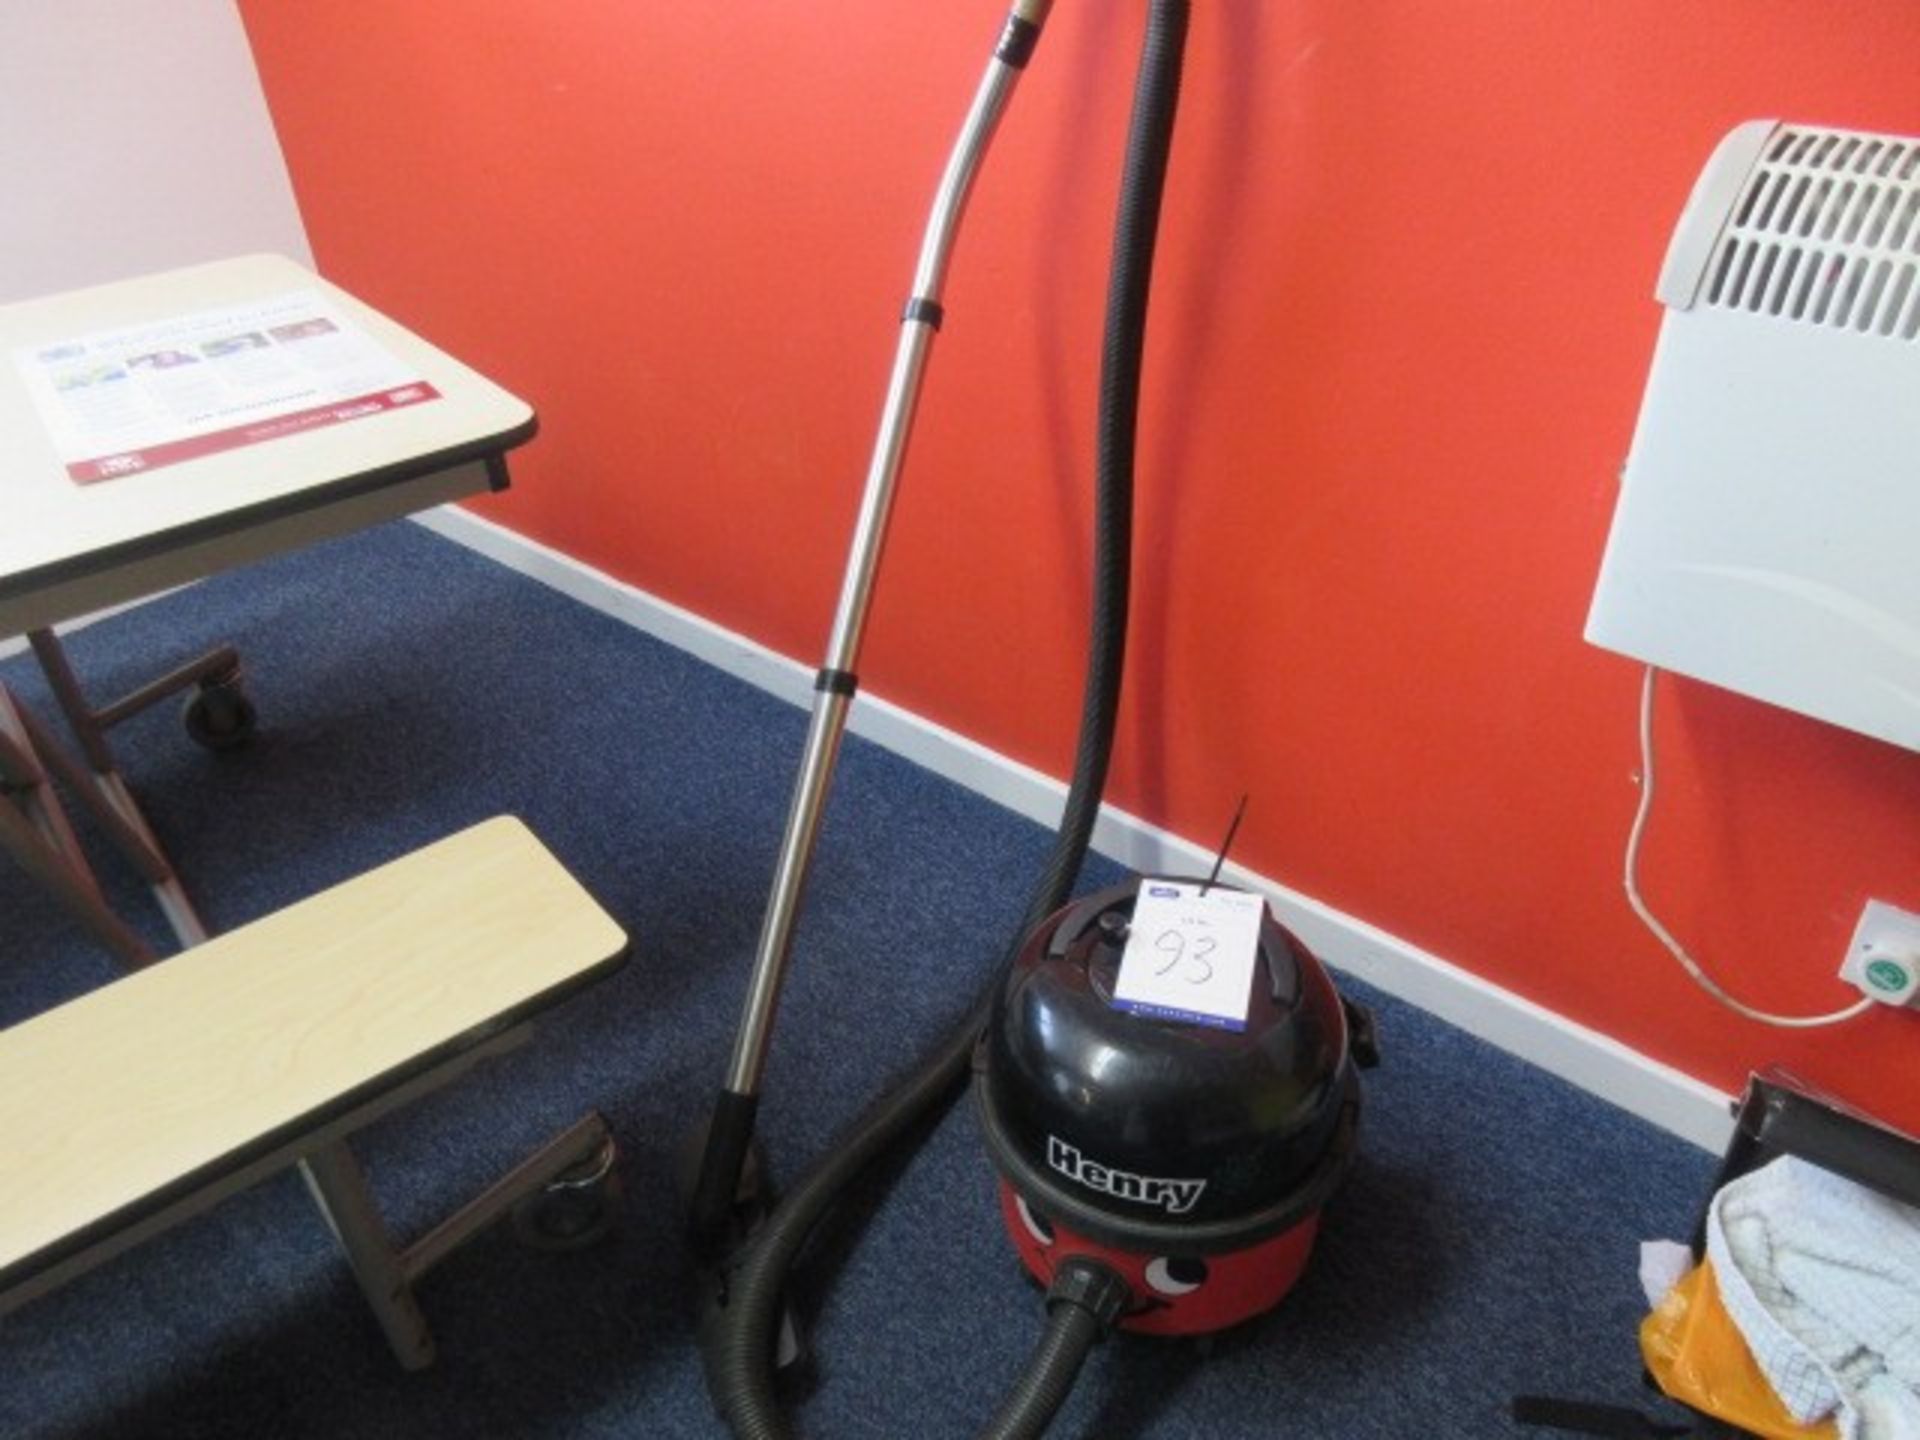 Henry HVR200A 240v vacuum cleaner.